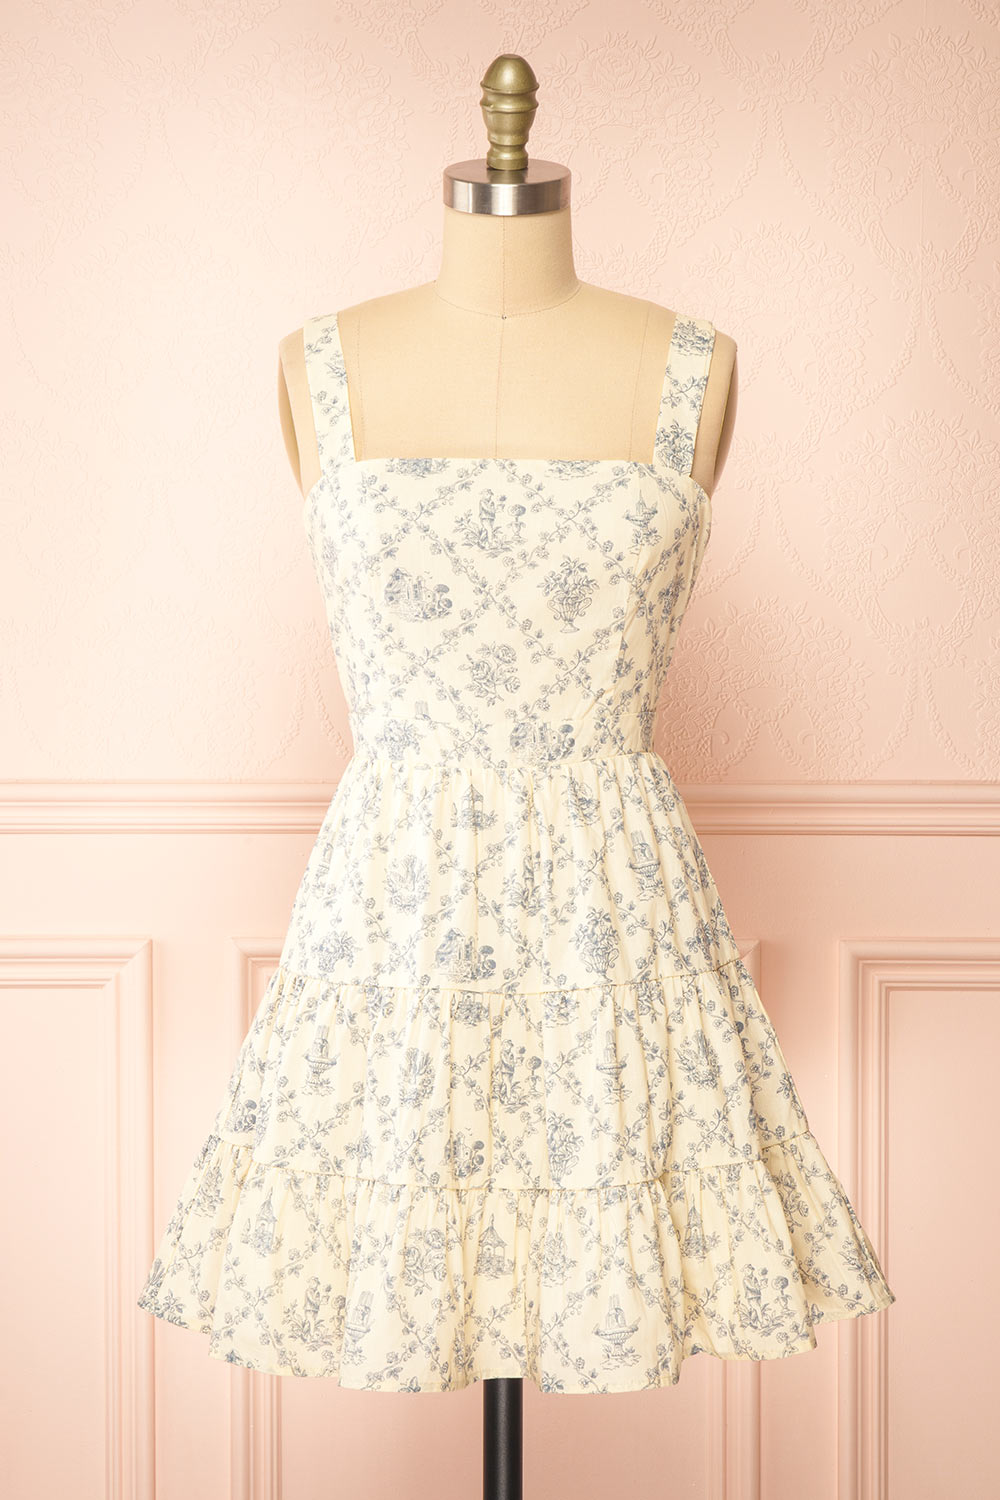 Selvina Short Beige Dress w/ Vintage Motif | Boutique 1861 front view